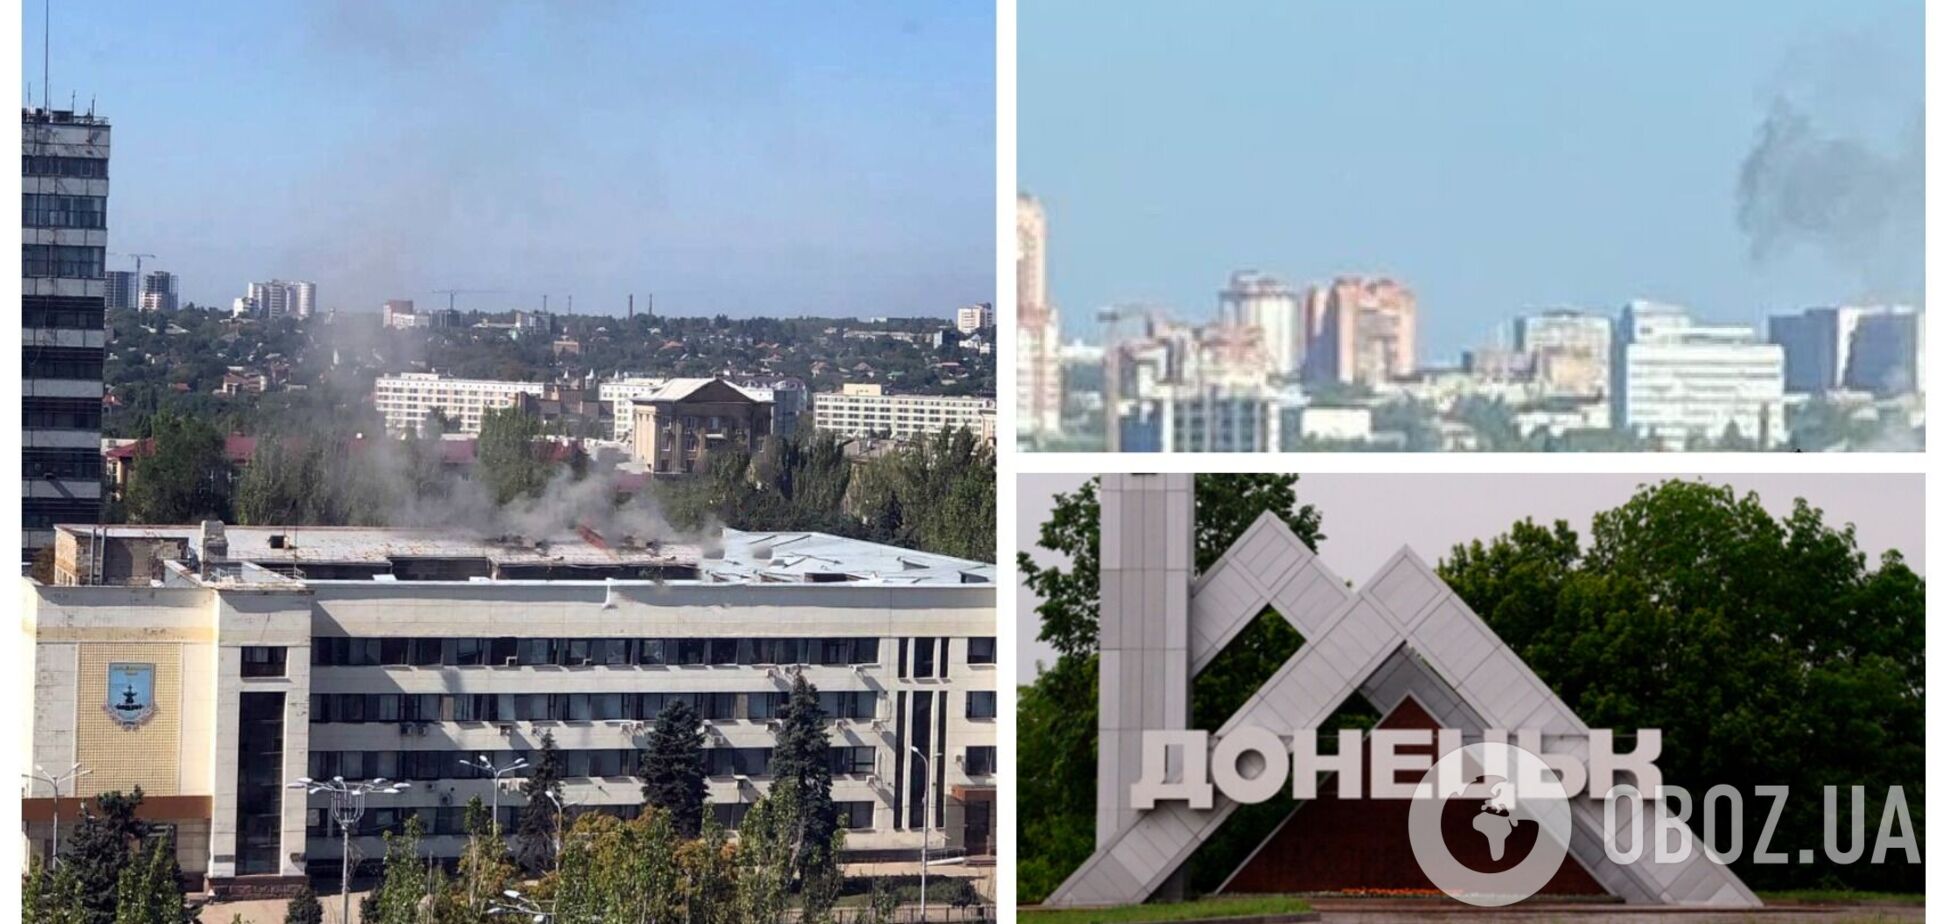 В оккупированном Донецке заявили о прилете по 'администрации' одного из районов. Фото и видео